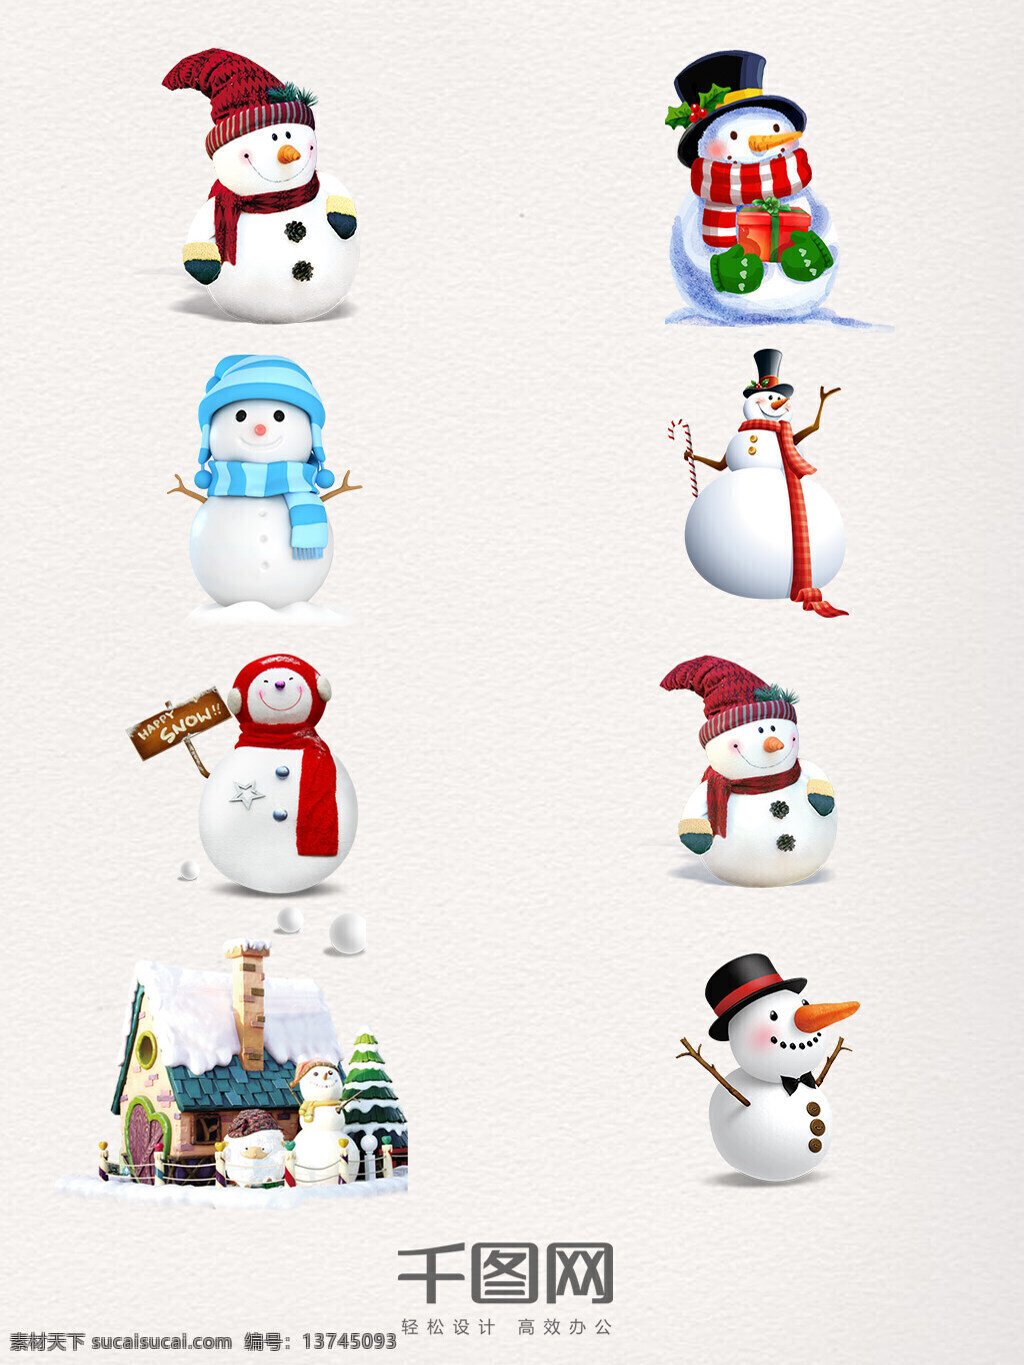 彩色 圣诞 雪人 装饰 图案 帽子雪人 彩色雪人 围巾 指示牌 手绘 可爱雪人 雪屋 大雪 小雪 立冬 冬至 白色雪人